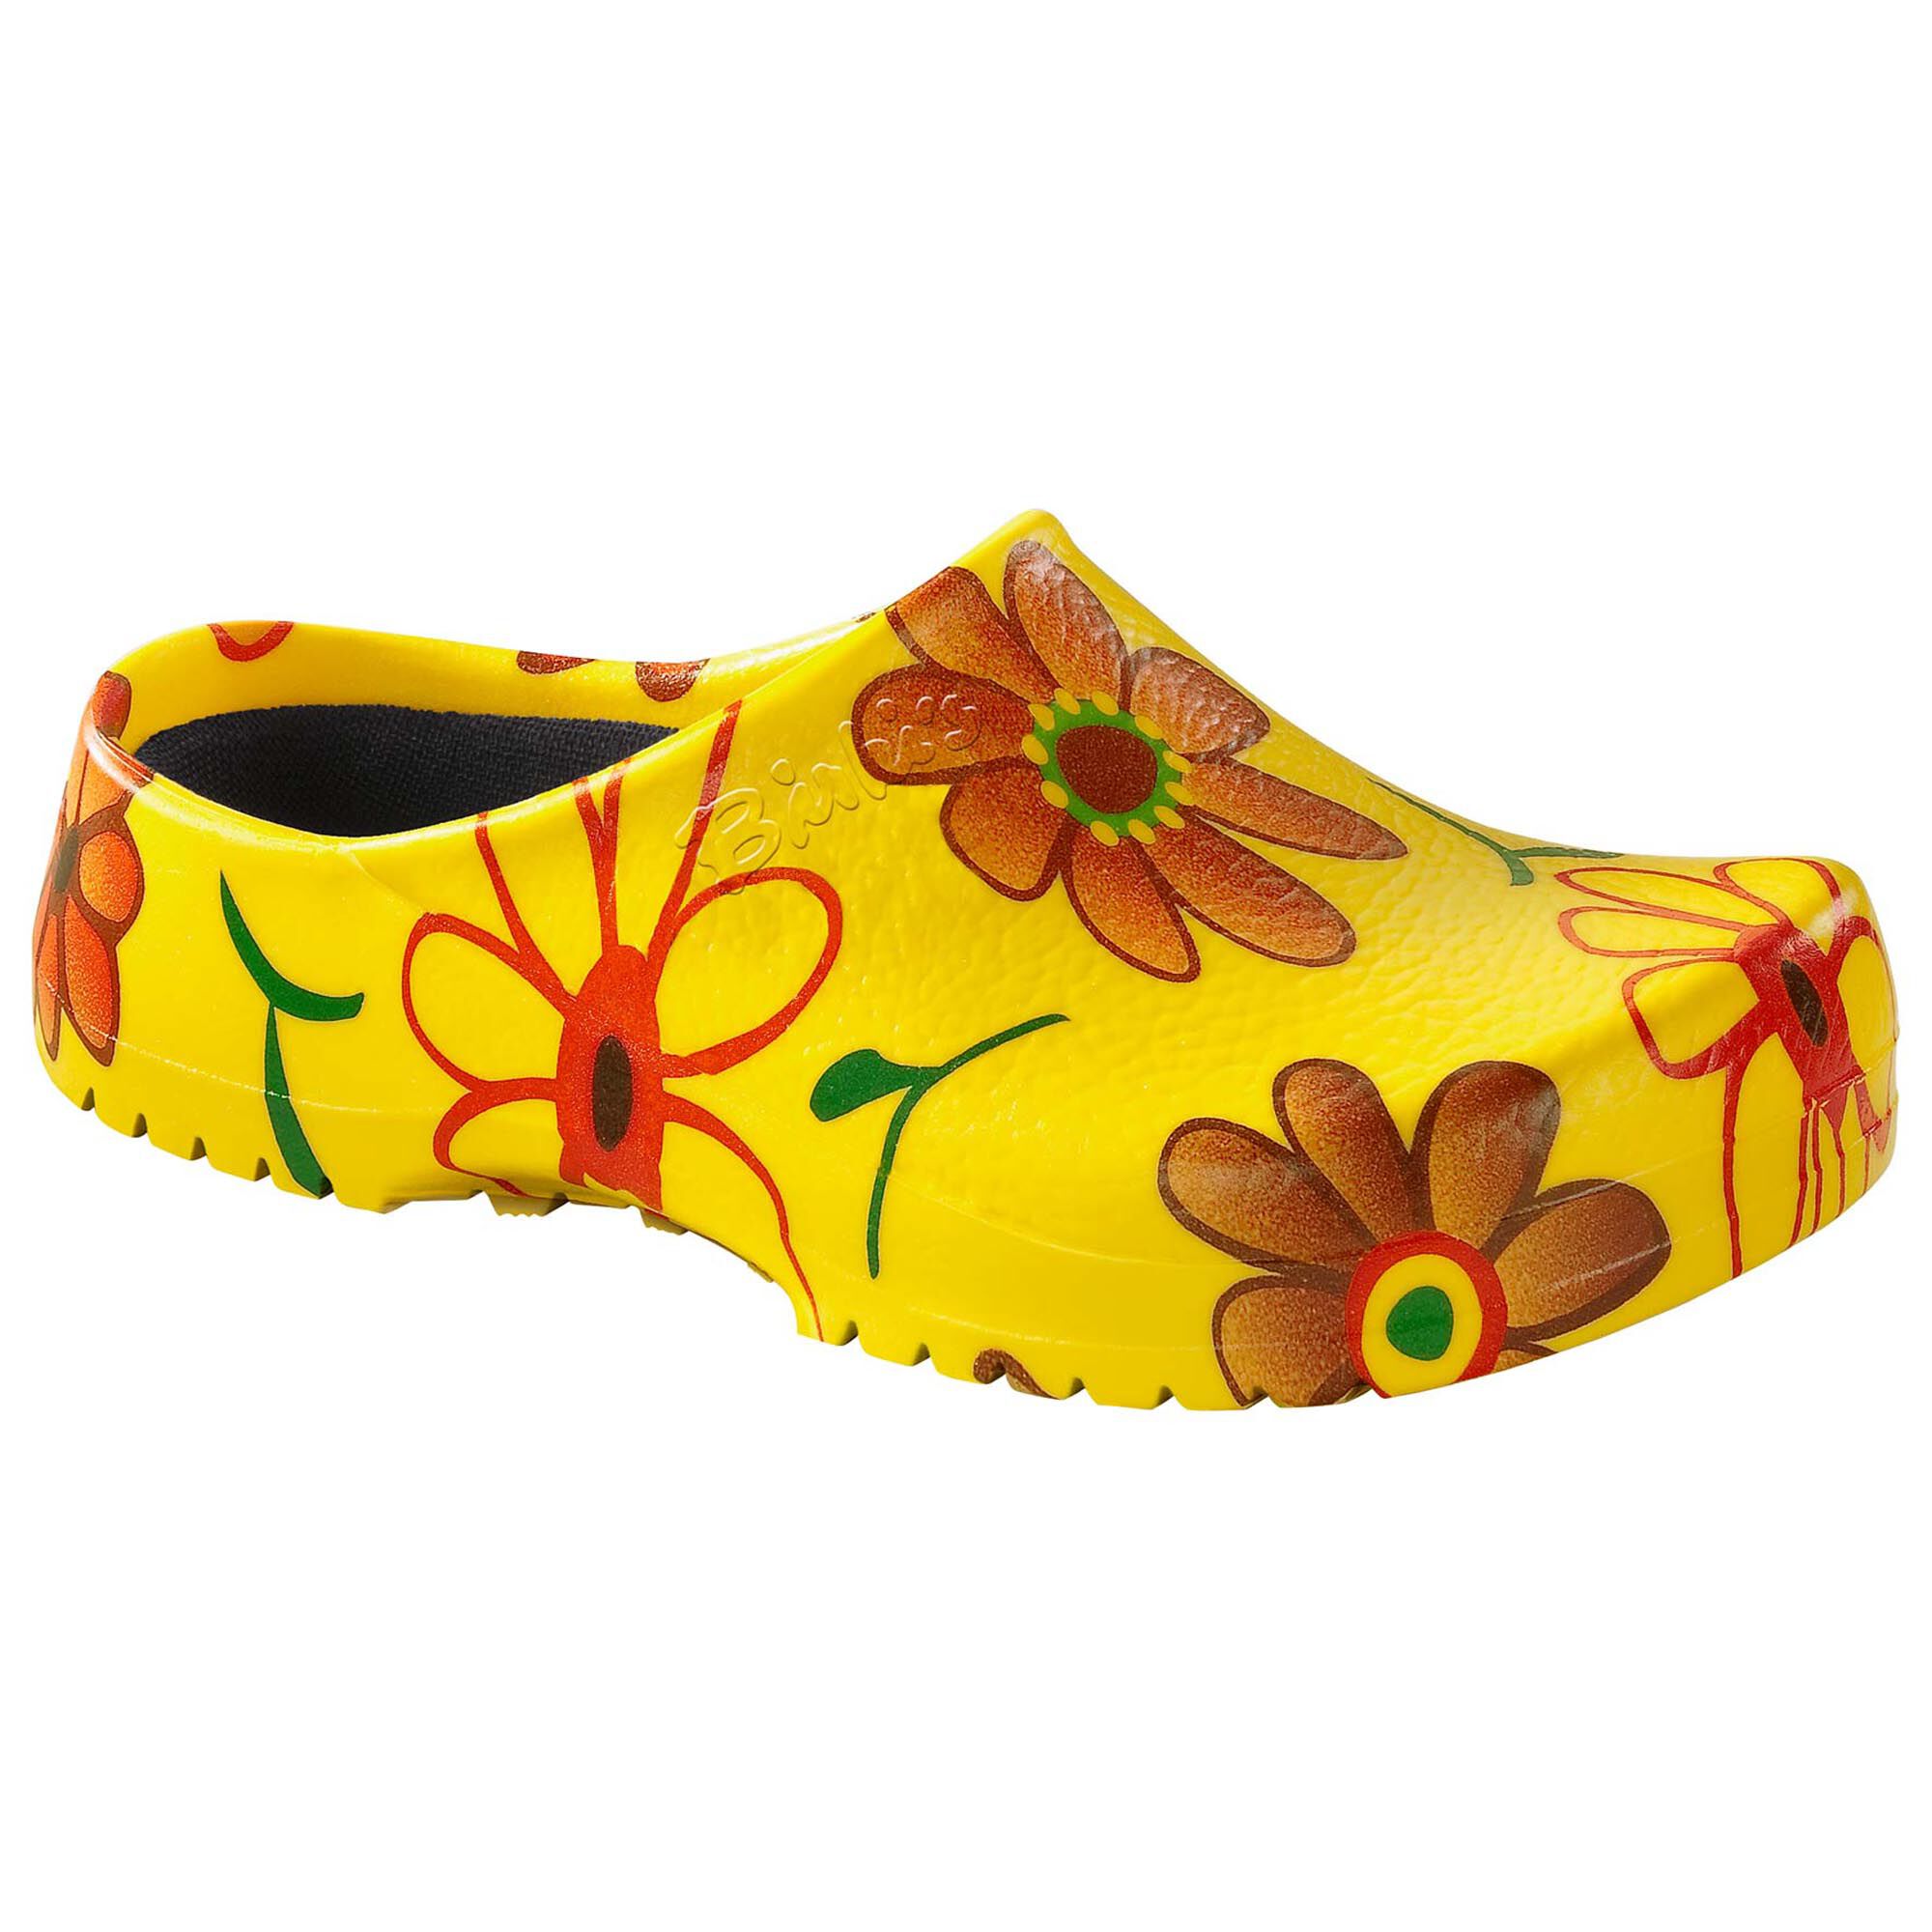 slide slippers for boys